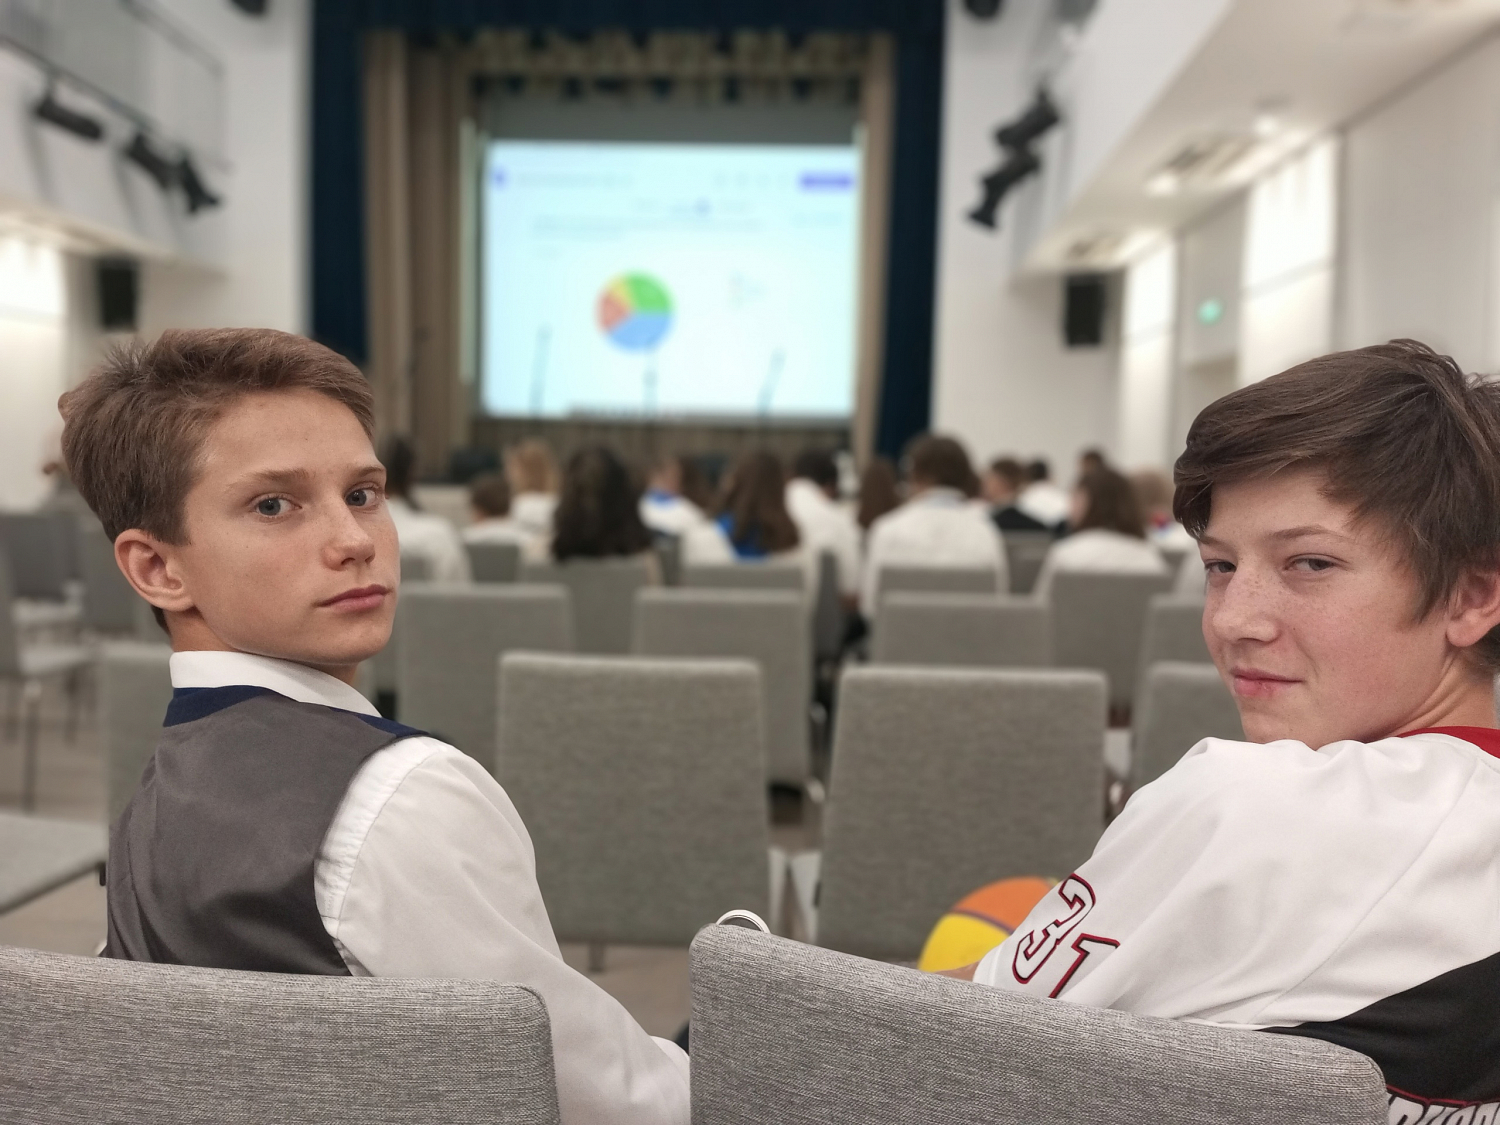 В День учителя в Новой Черноголовской школе ученики заняли место педагогов